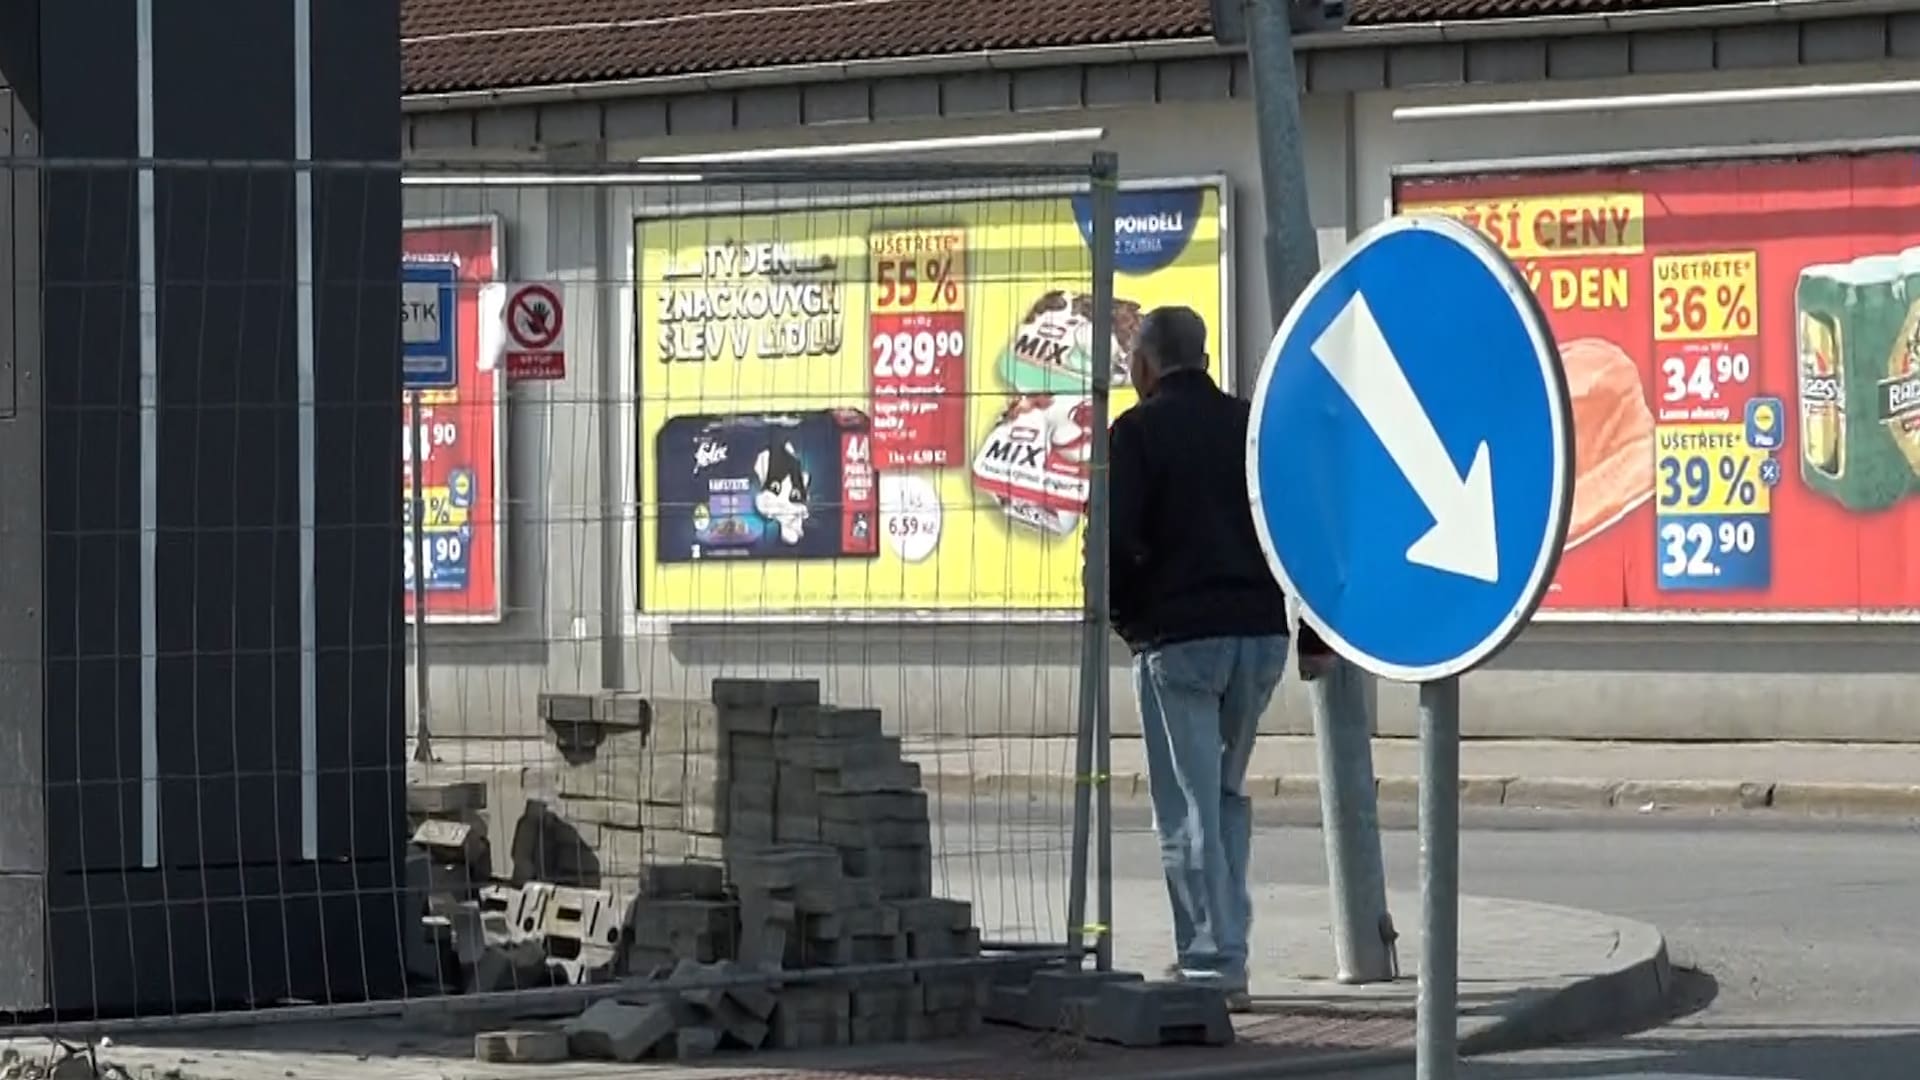 Nevhodně umístěný billboard stále blokuje přechod v Zábřehu.